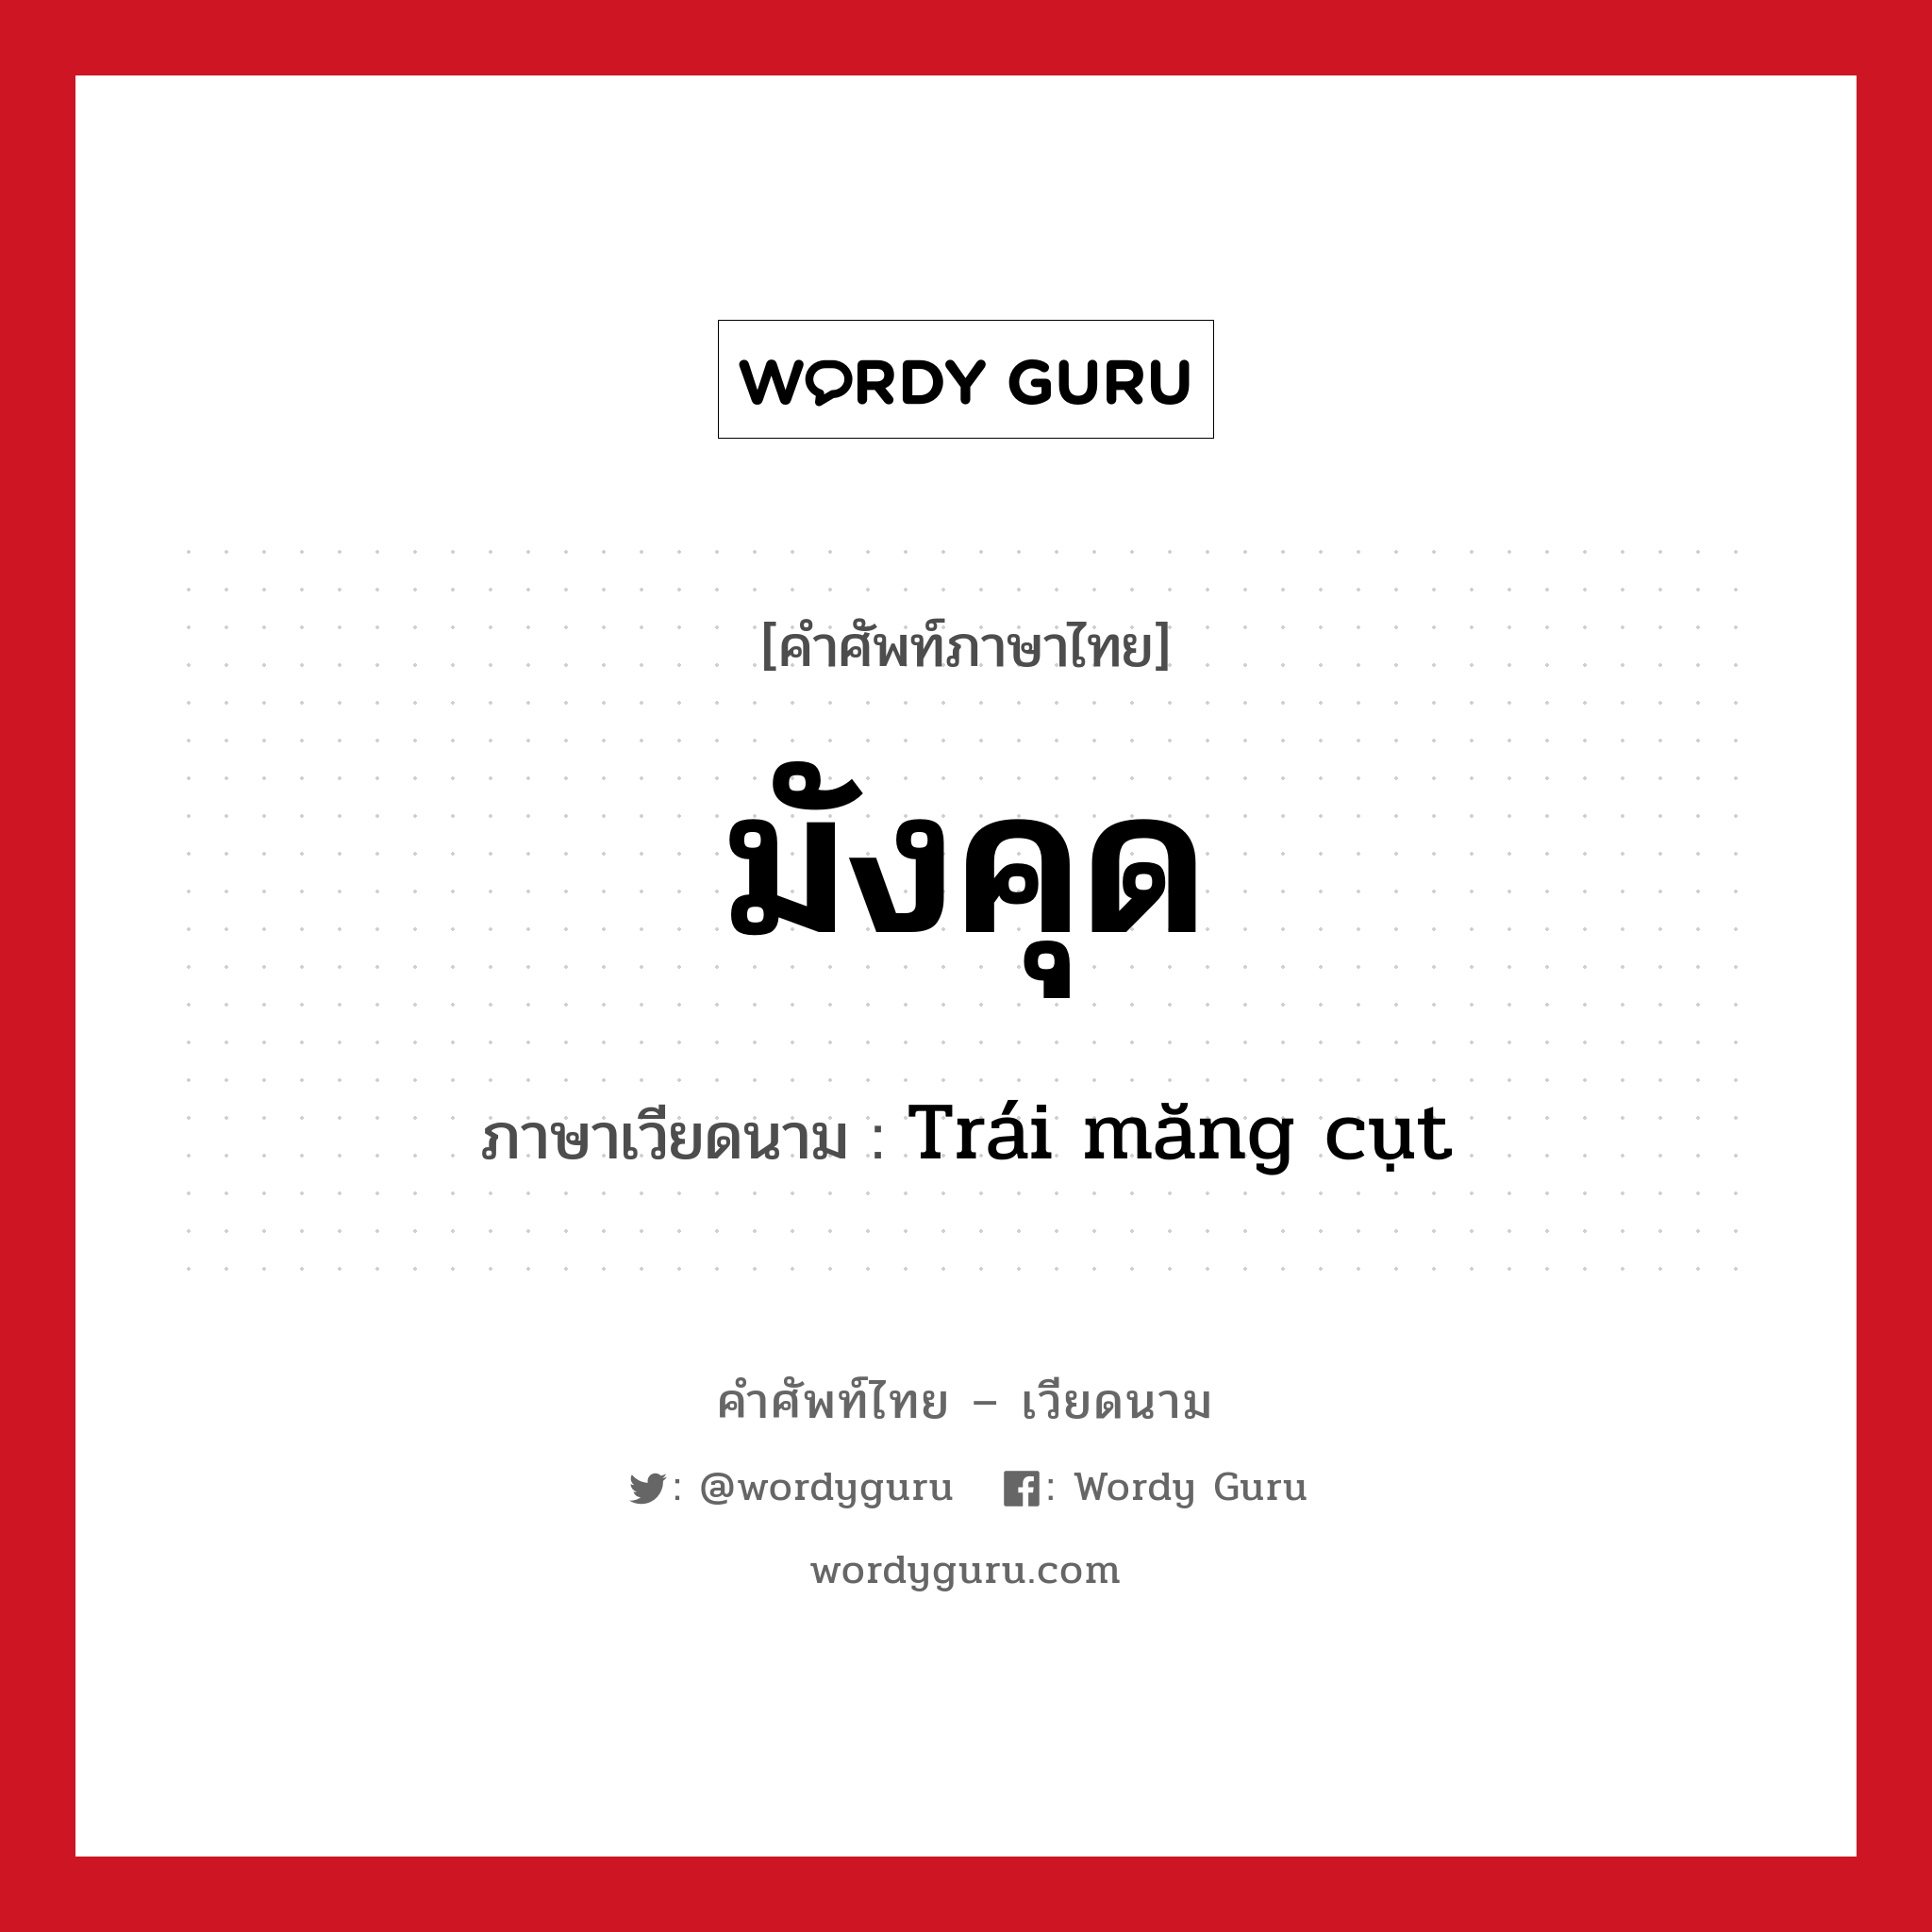 มังคุด ภาษาเวียดนามคืออะไร, คำศัพท์ภาษาไทย - เวียดนาม มังคุด ภาษาเวียดนาม Trái măng cụt หมวด ผลไม้ หมวด ผลไม้